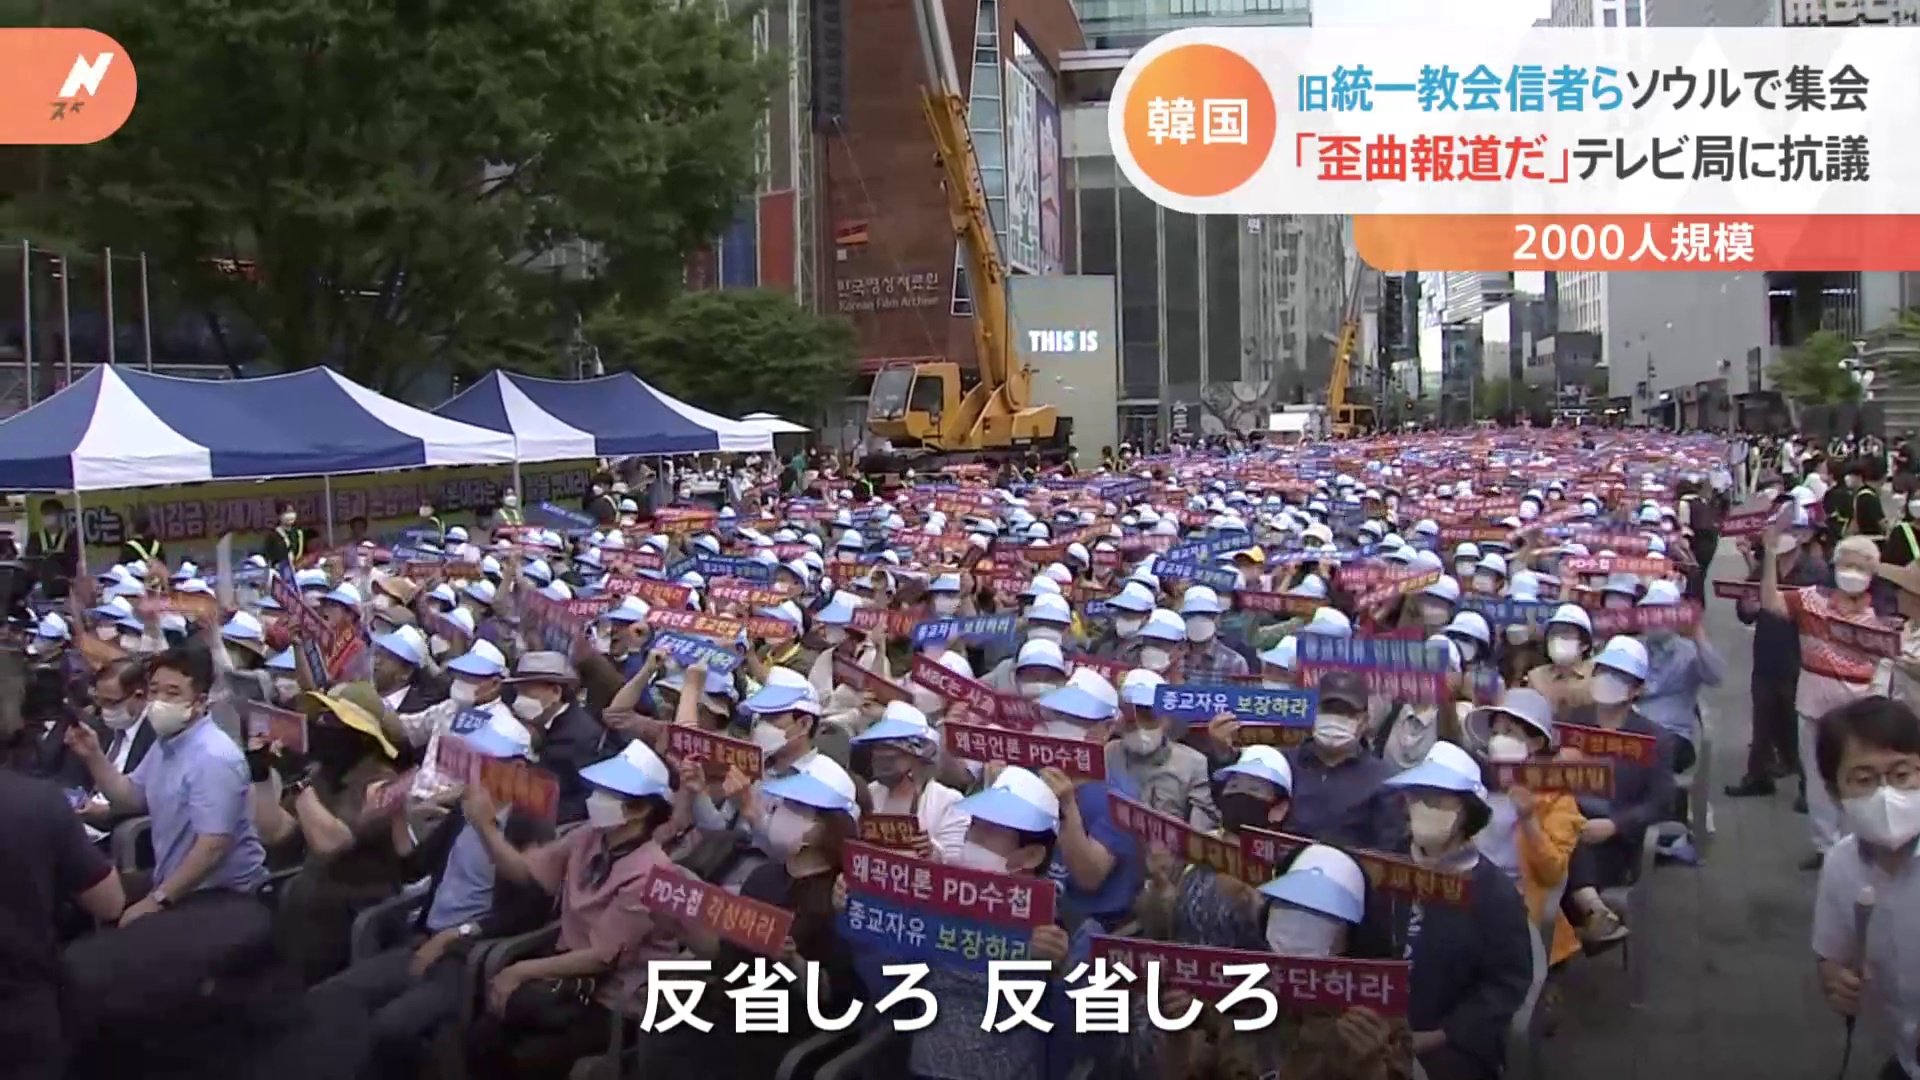 「歪曲放送だ」旧統一教会の信者ら2000人が韓国テレビ局前でデモ